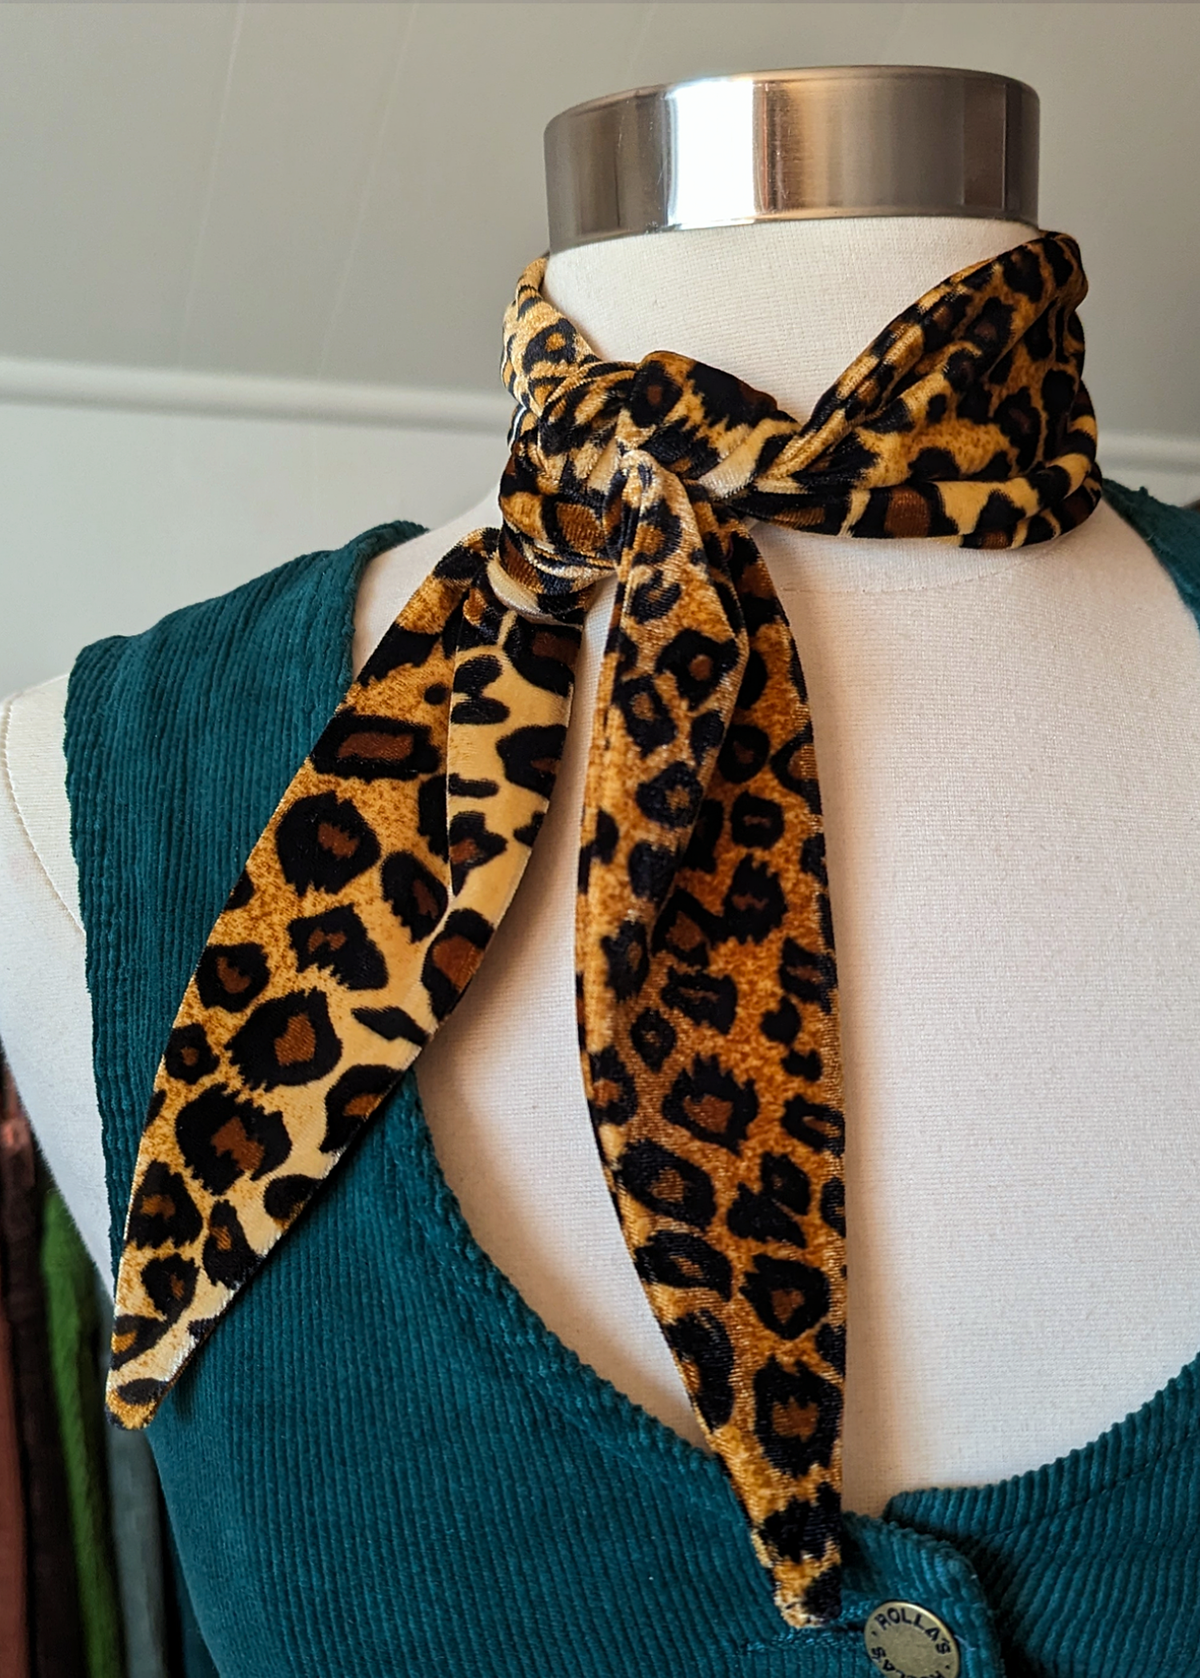 The Bebe Leopard Velvet Scarf Tie